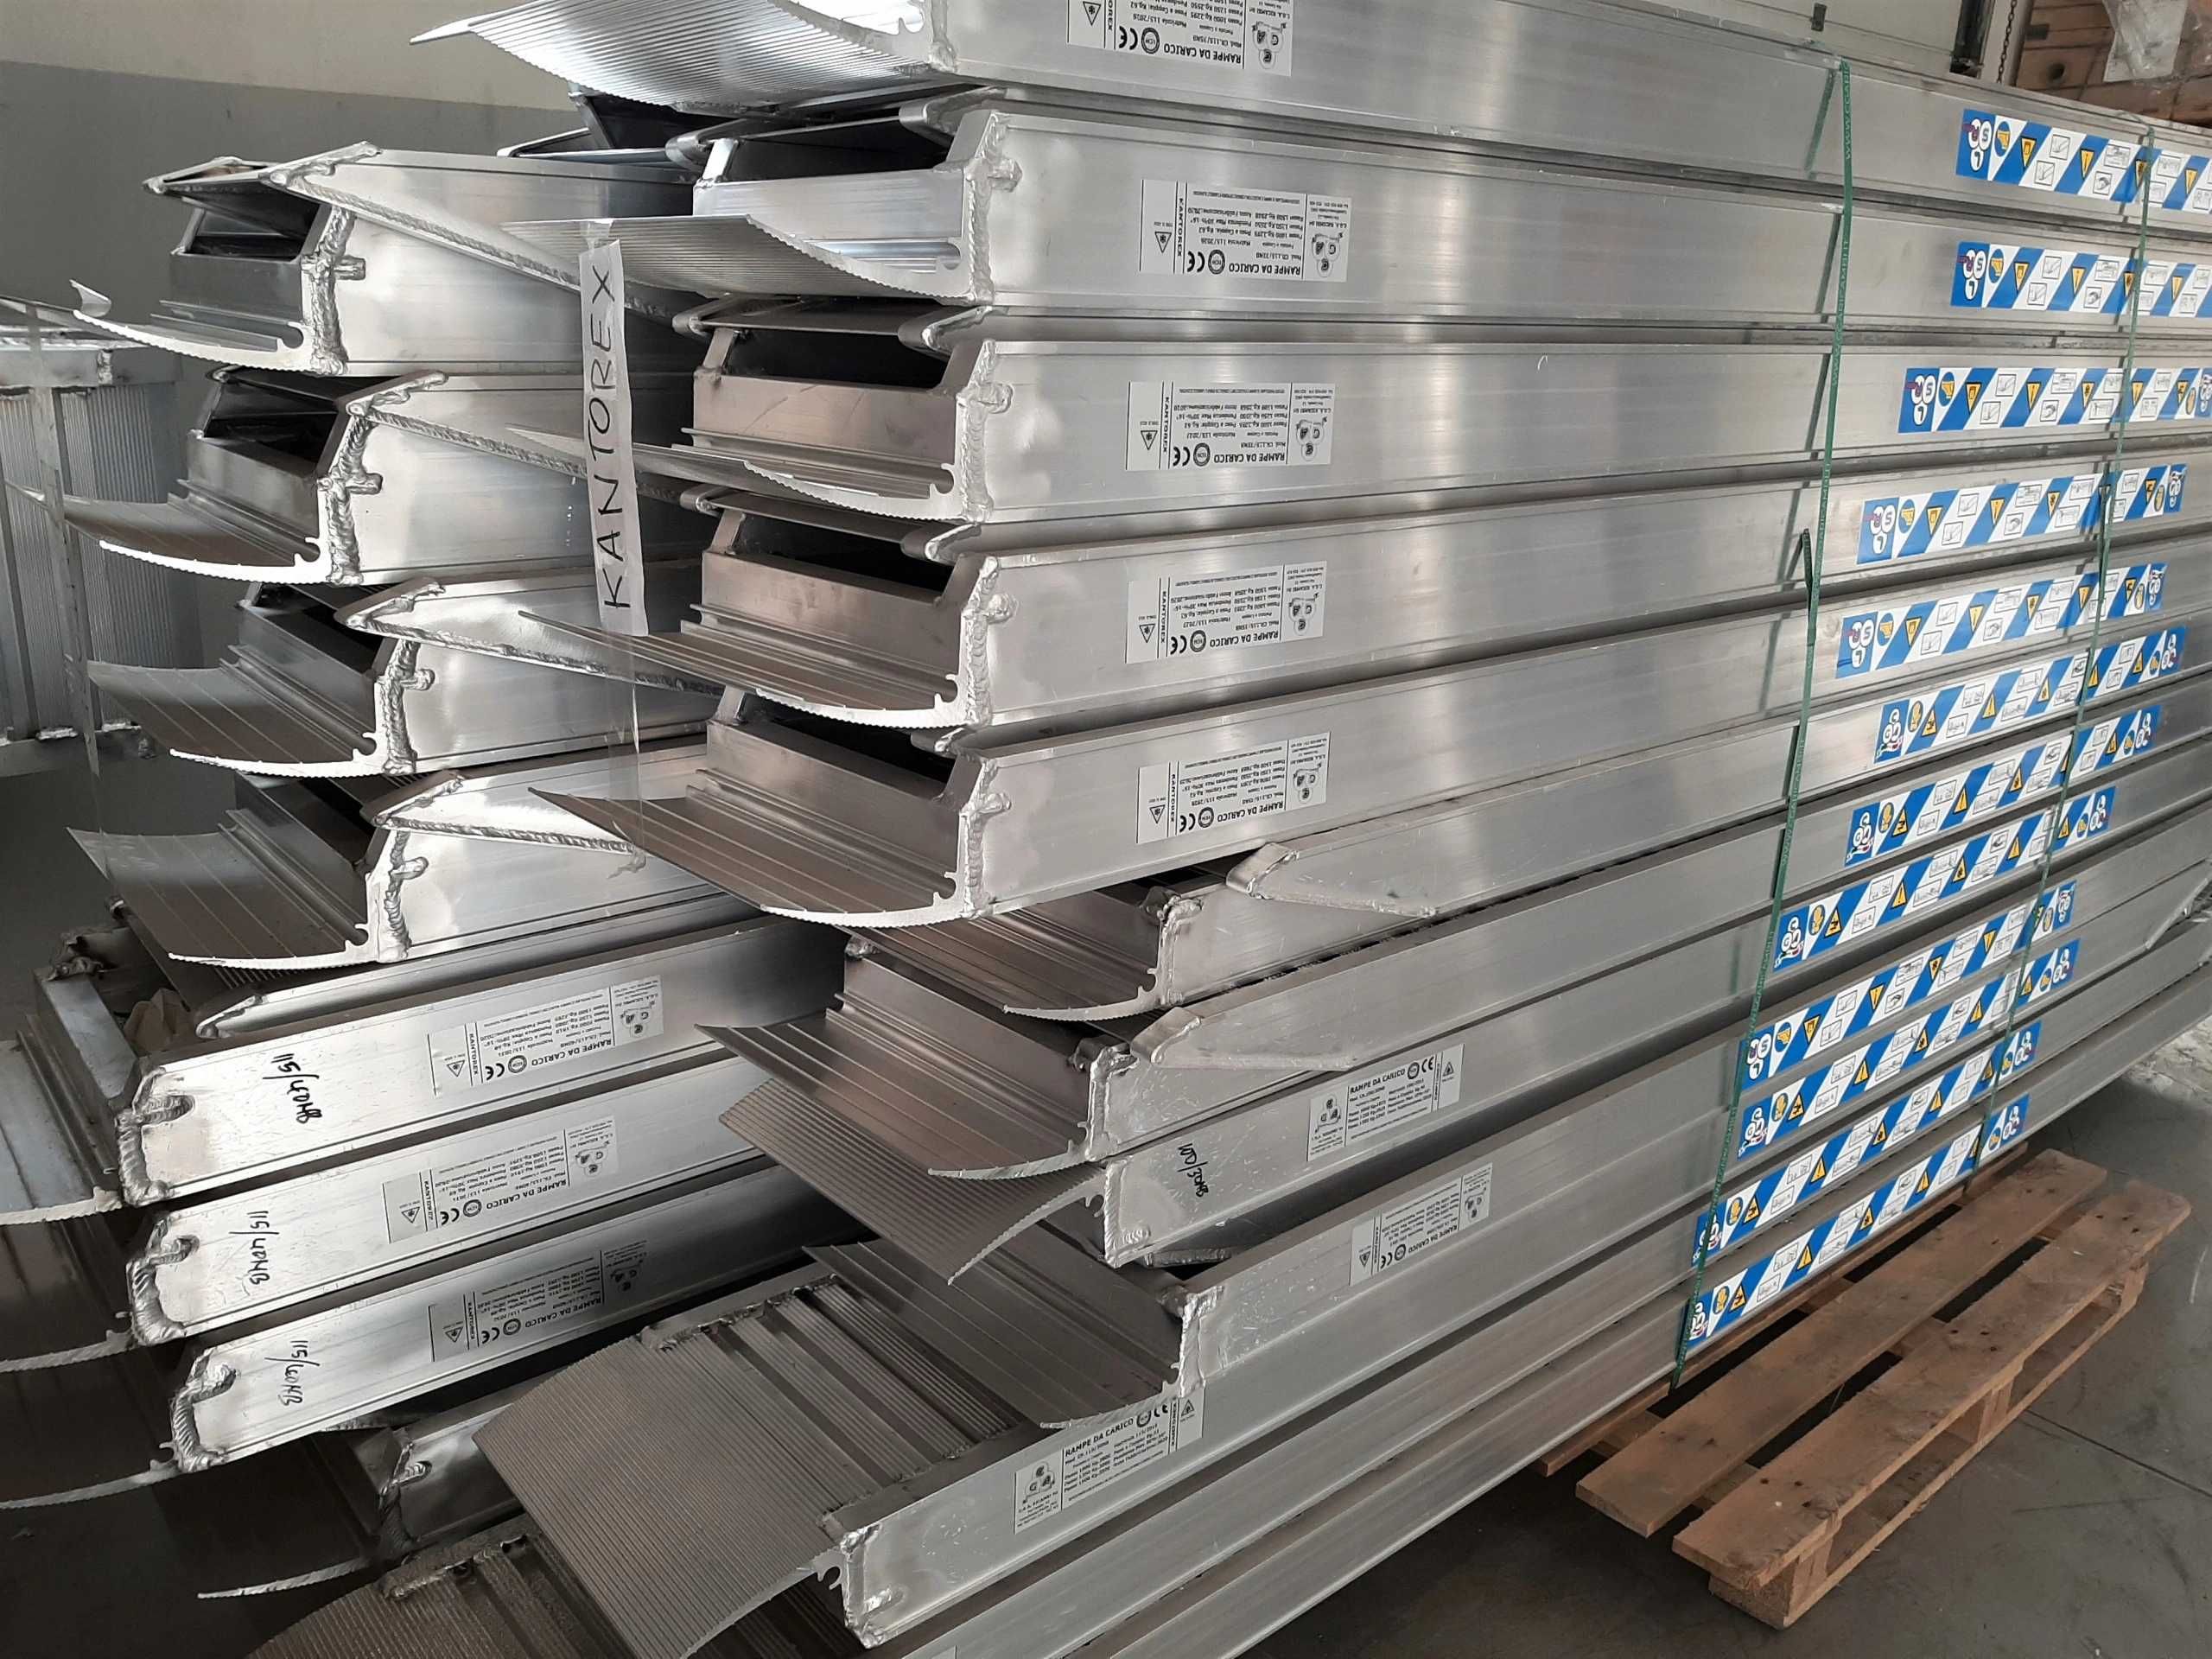 Najazdy Aluminiowe Komplet 2,5 m do 4,4 t, dostawa 0zł